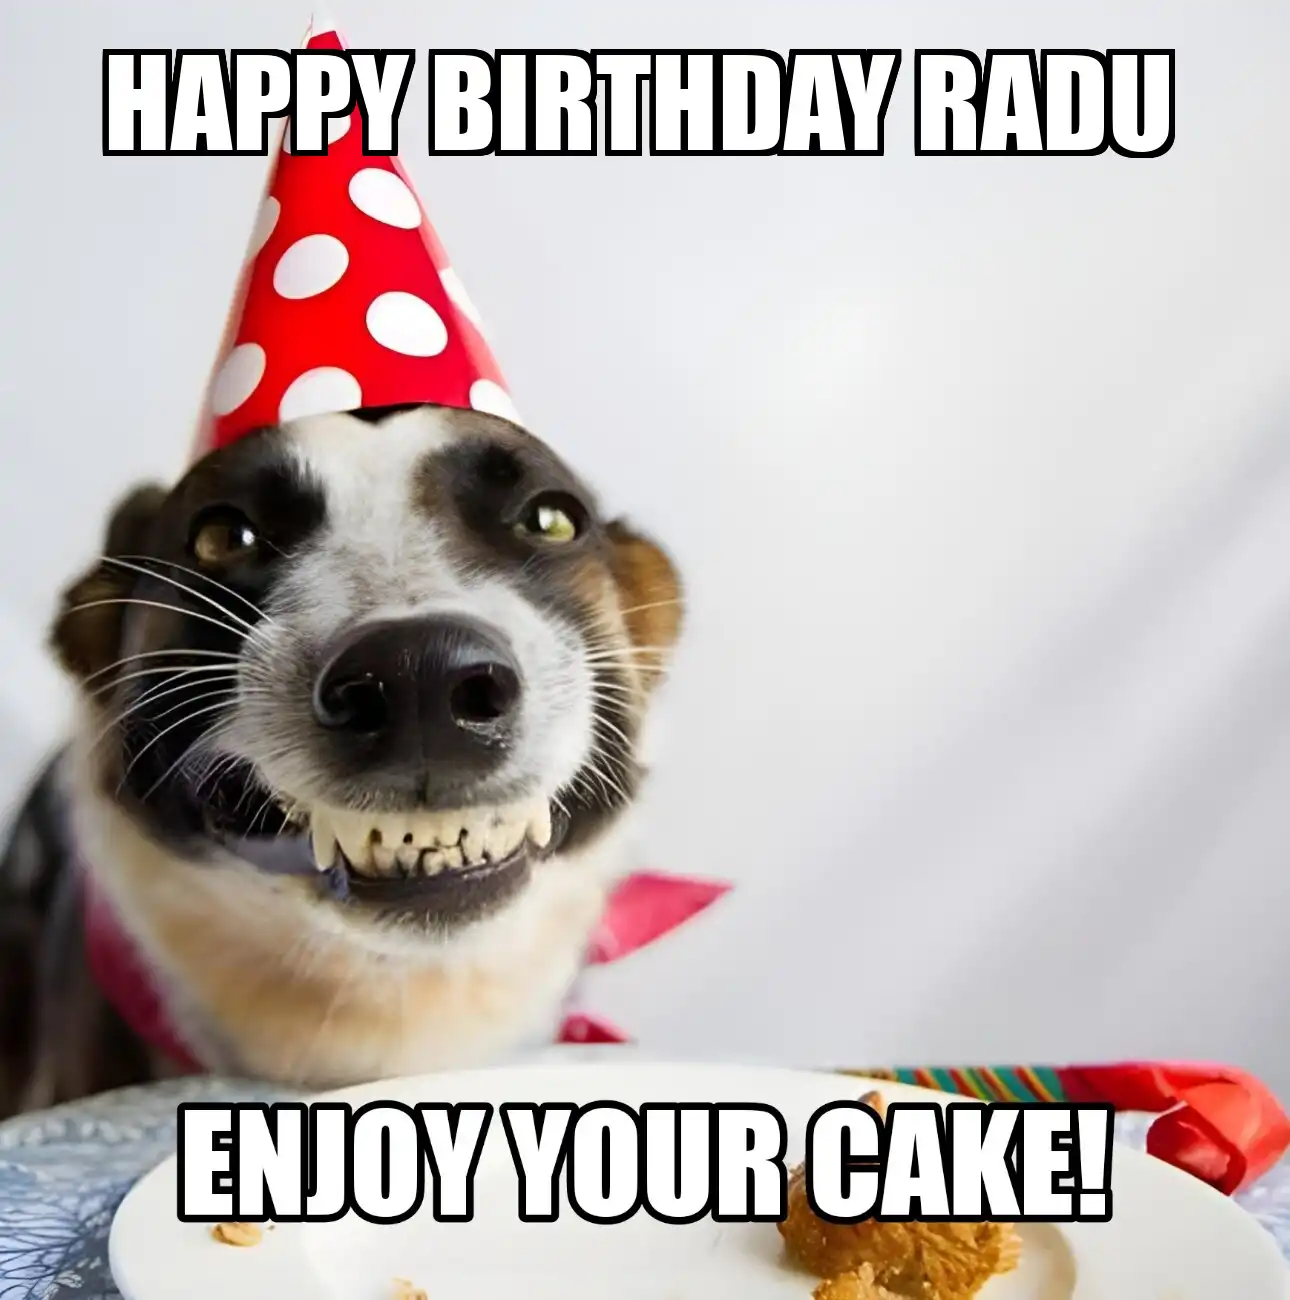 Happy Birthday Radu Enjoy Your Cake Dog Meme